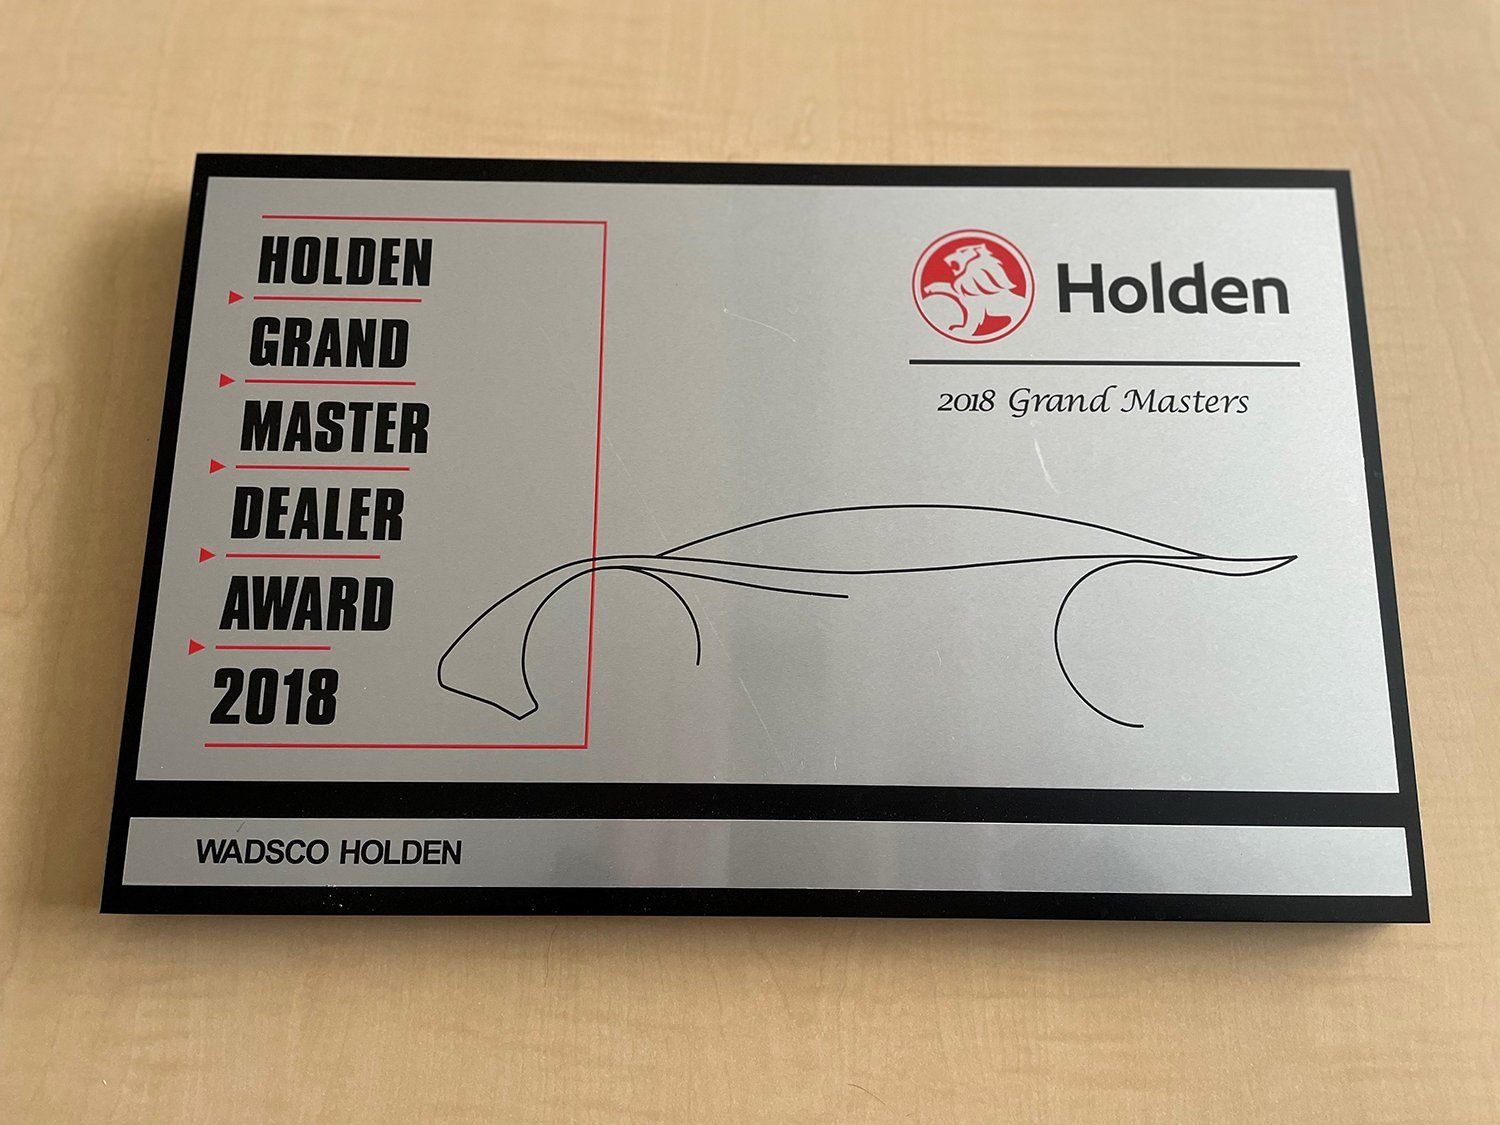 Wadsco Holden wins the 2018 Holden Grand Master Dealer Award